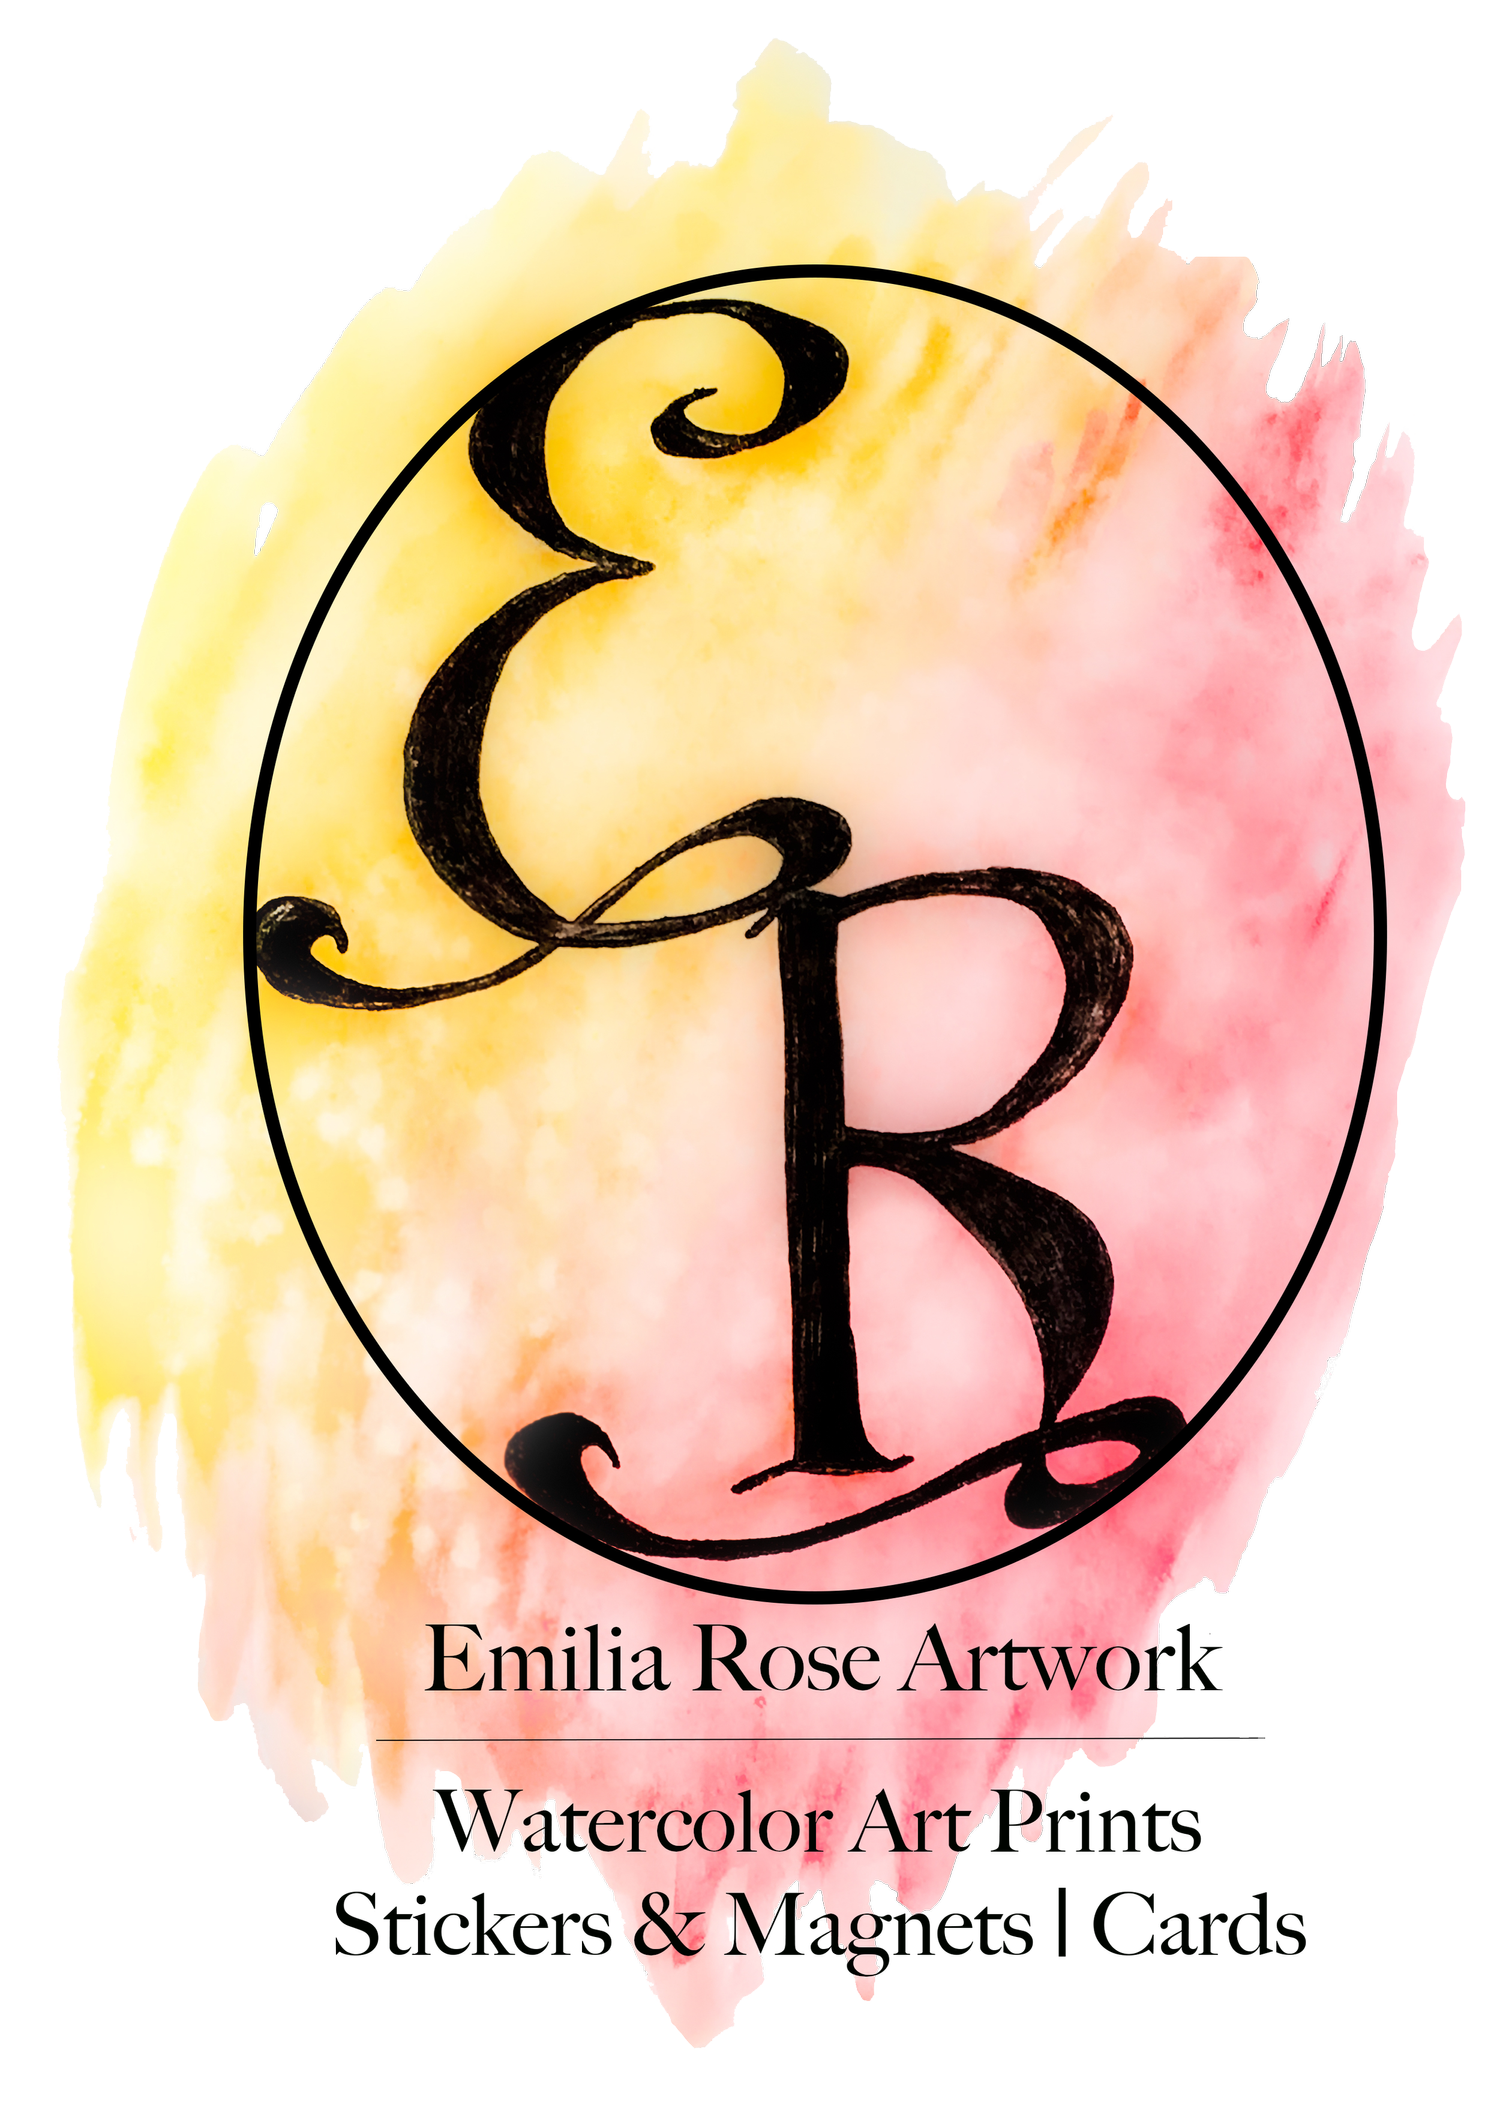 Emilia Rose